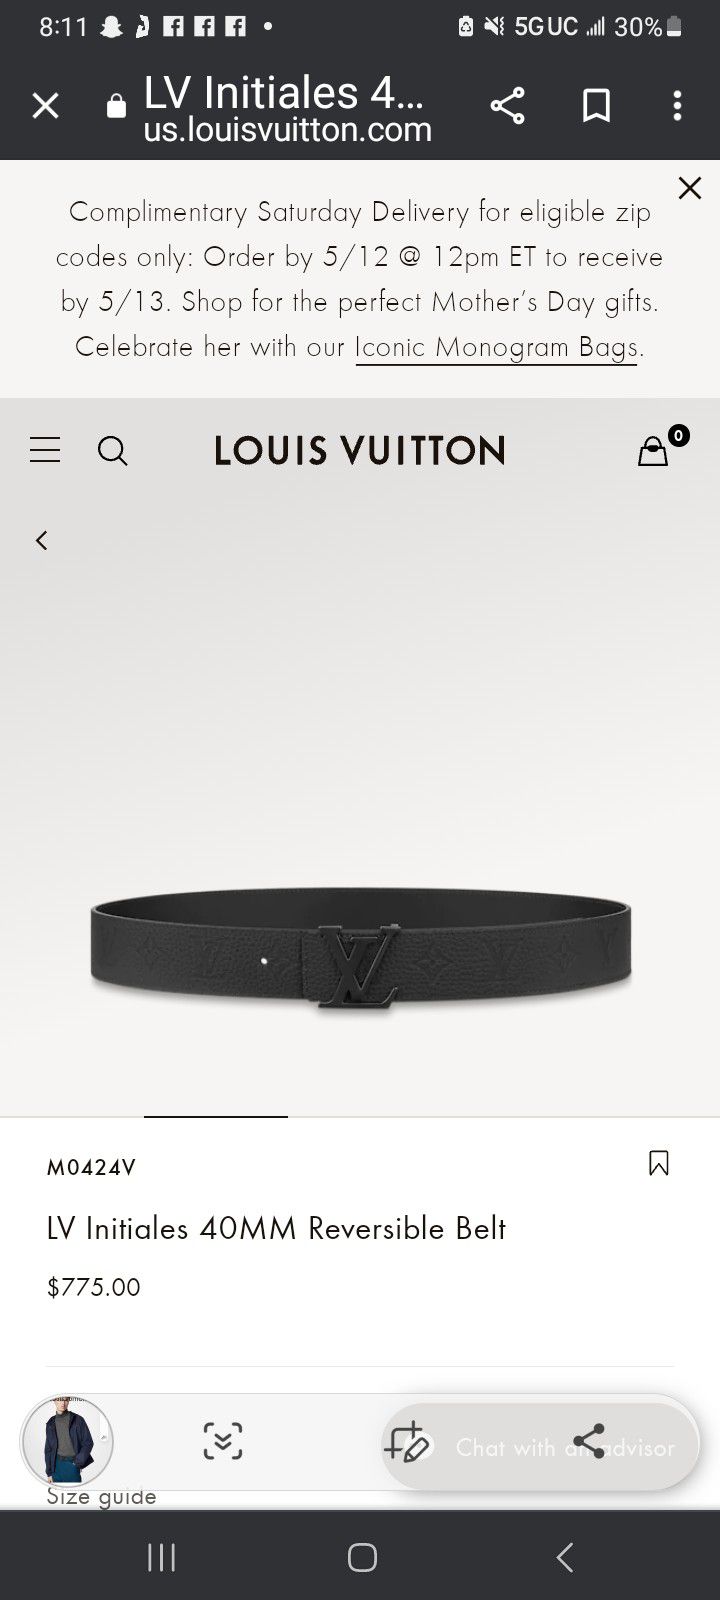 Louis Vuitton Lv initiales 40mm reversible belt (M0424V)